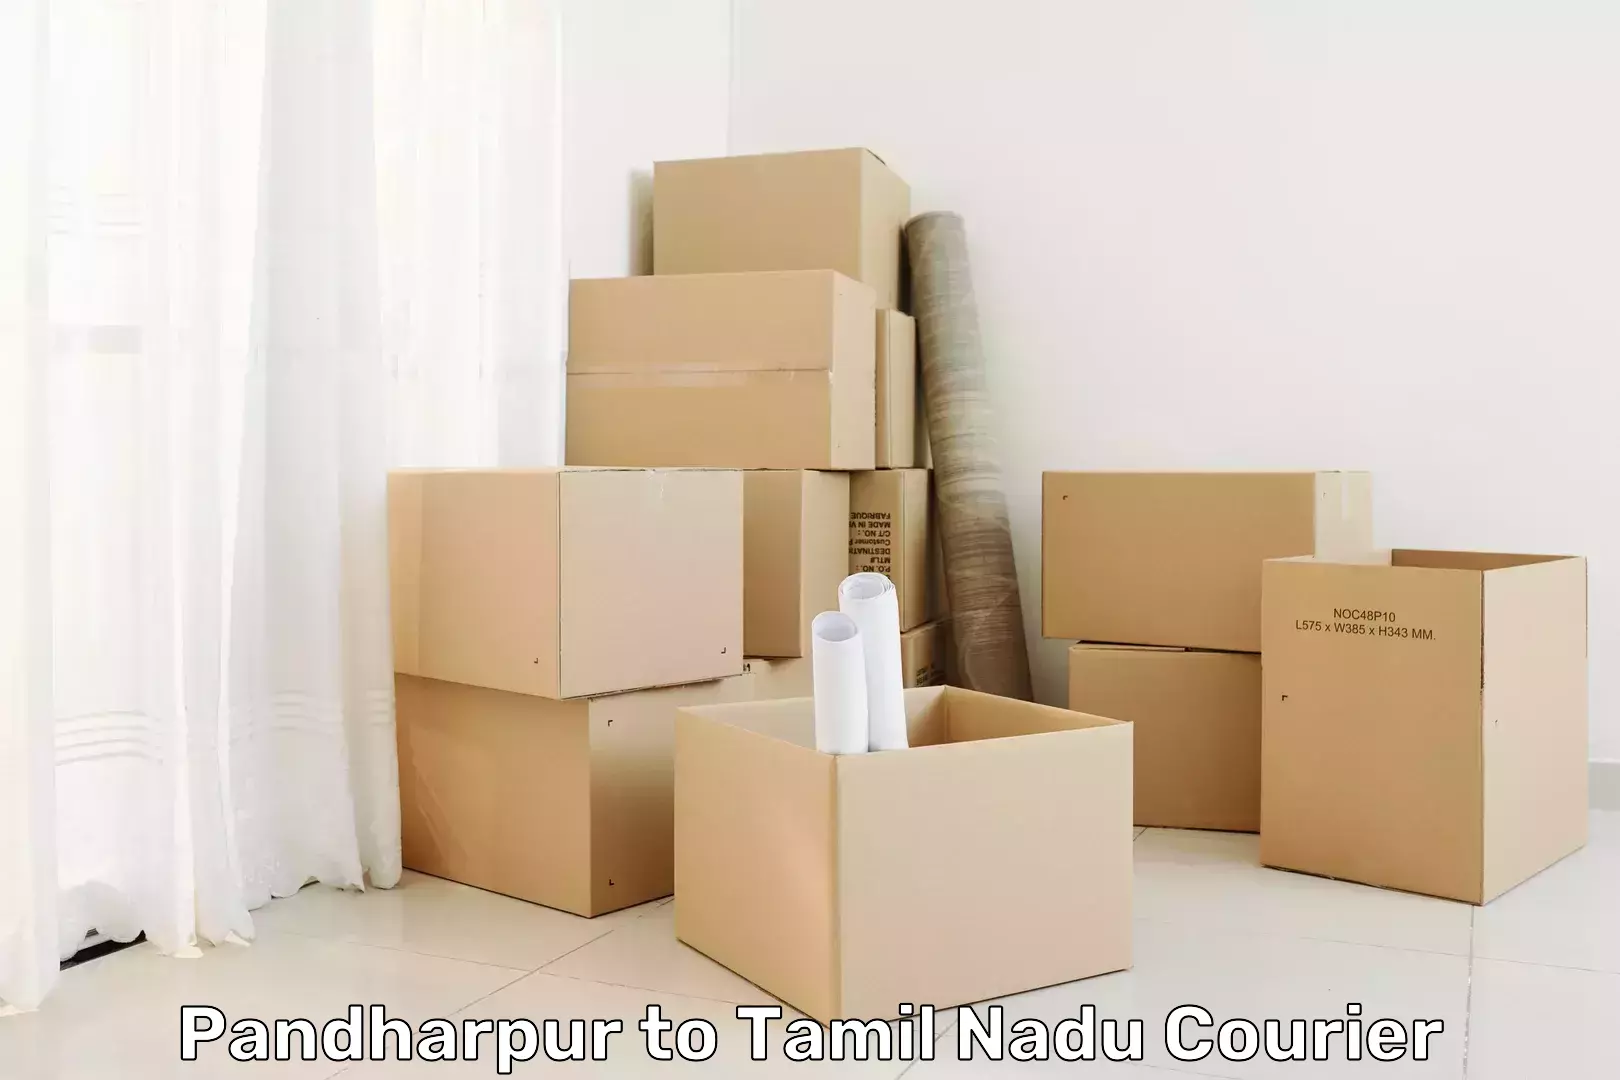 Efficient parcel service Pandharpur to Mylapore